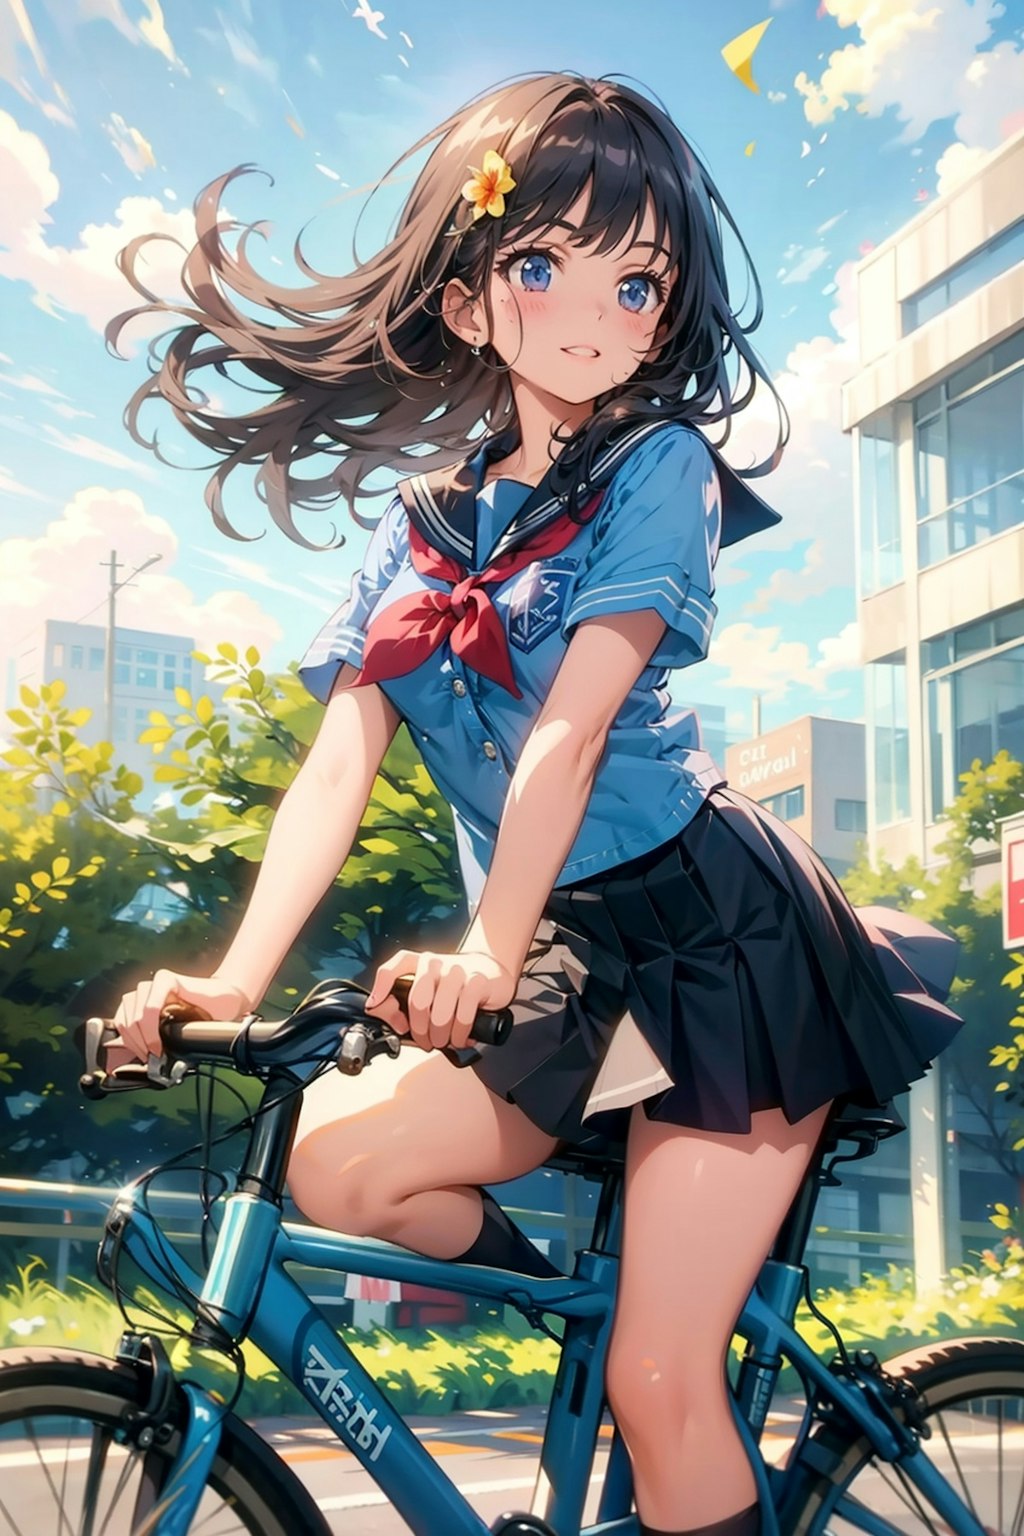 自転車通学の日常